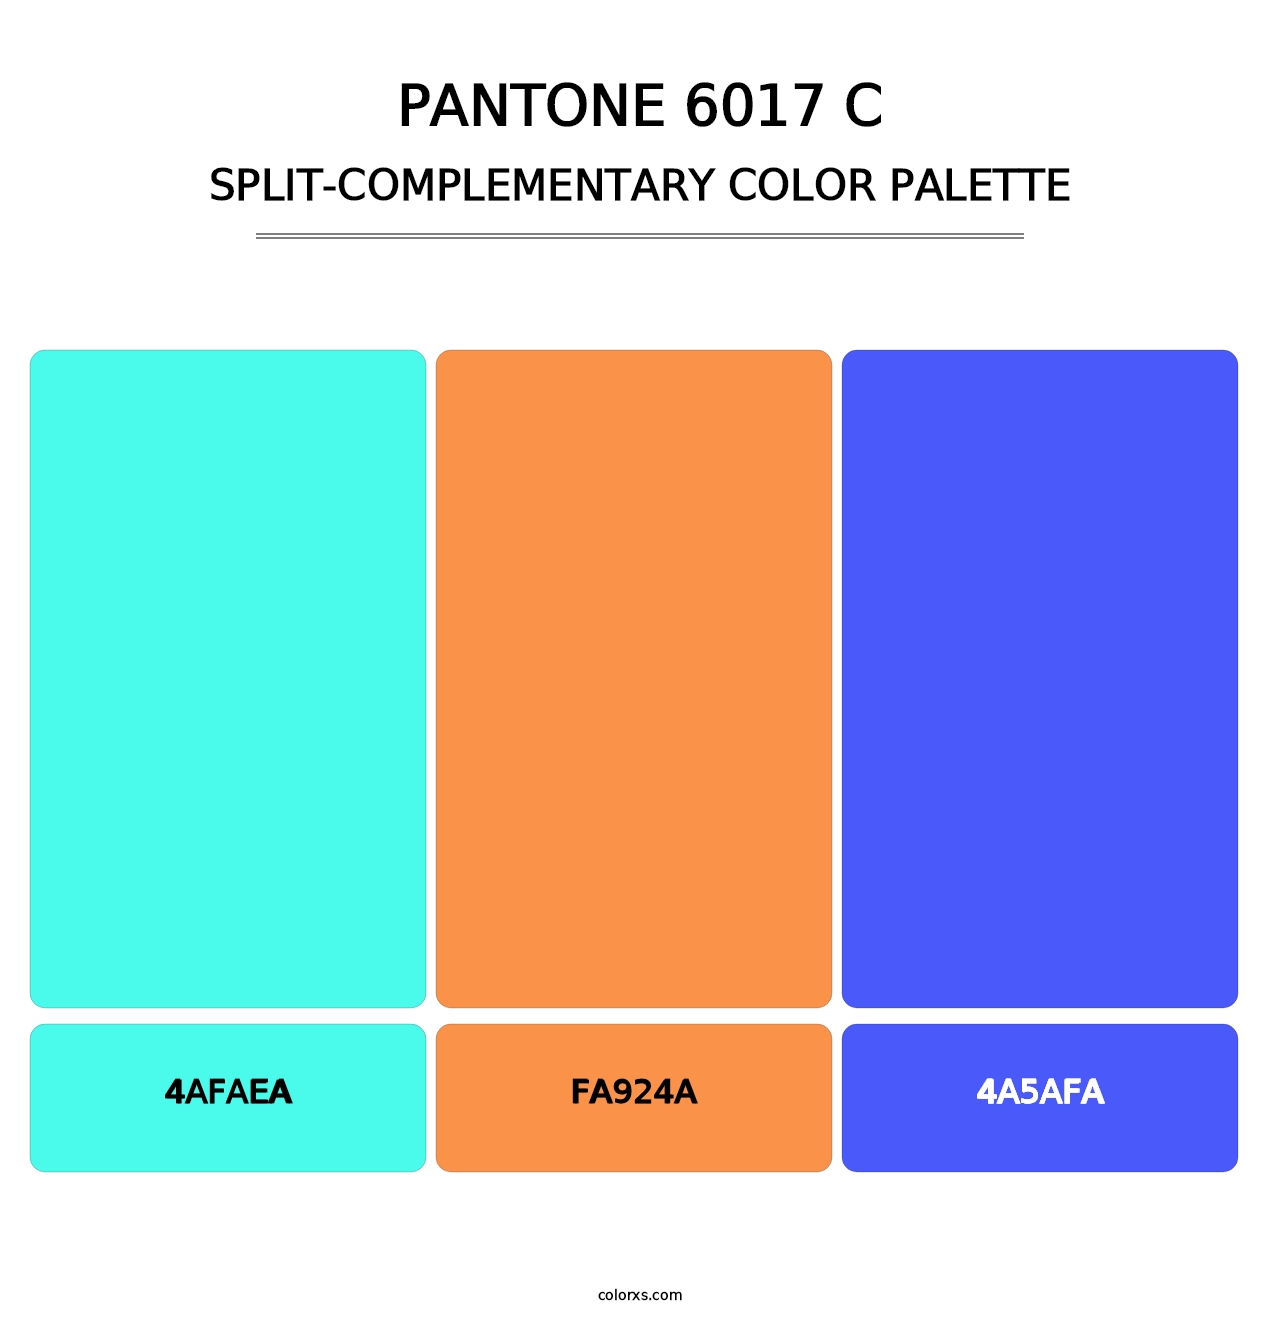 PANTONE 6017 C - Split-Complementary Color Palette